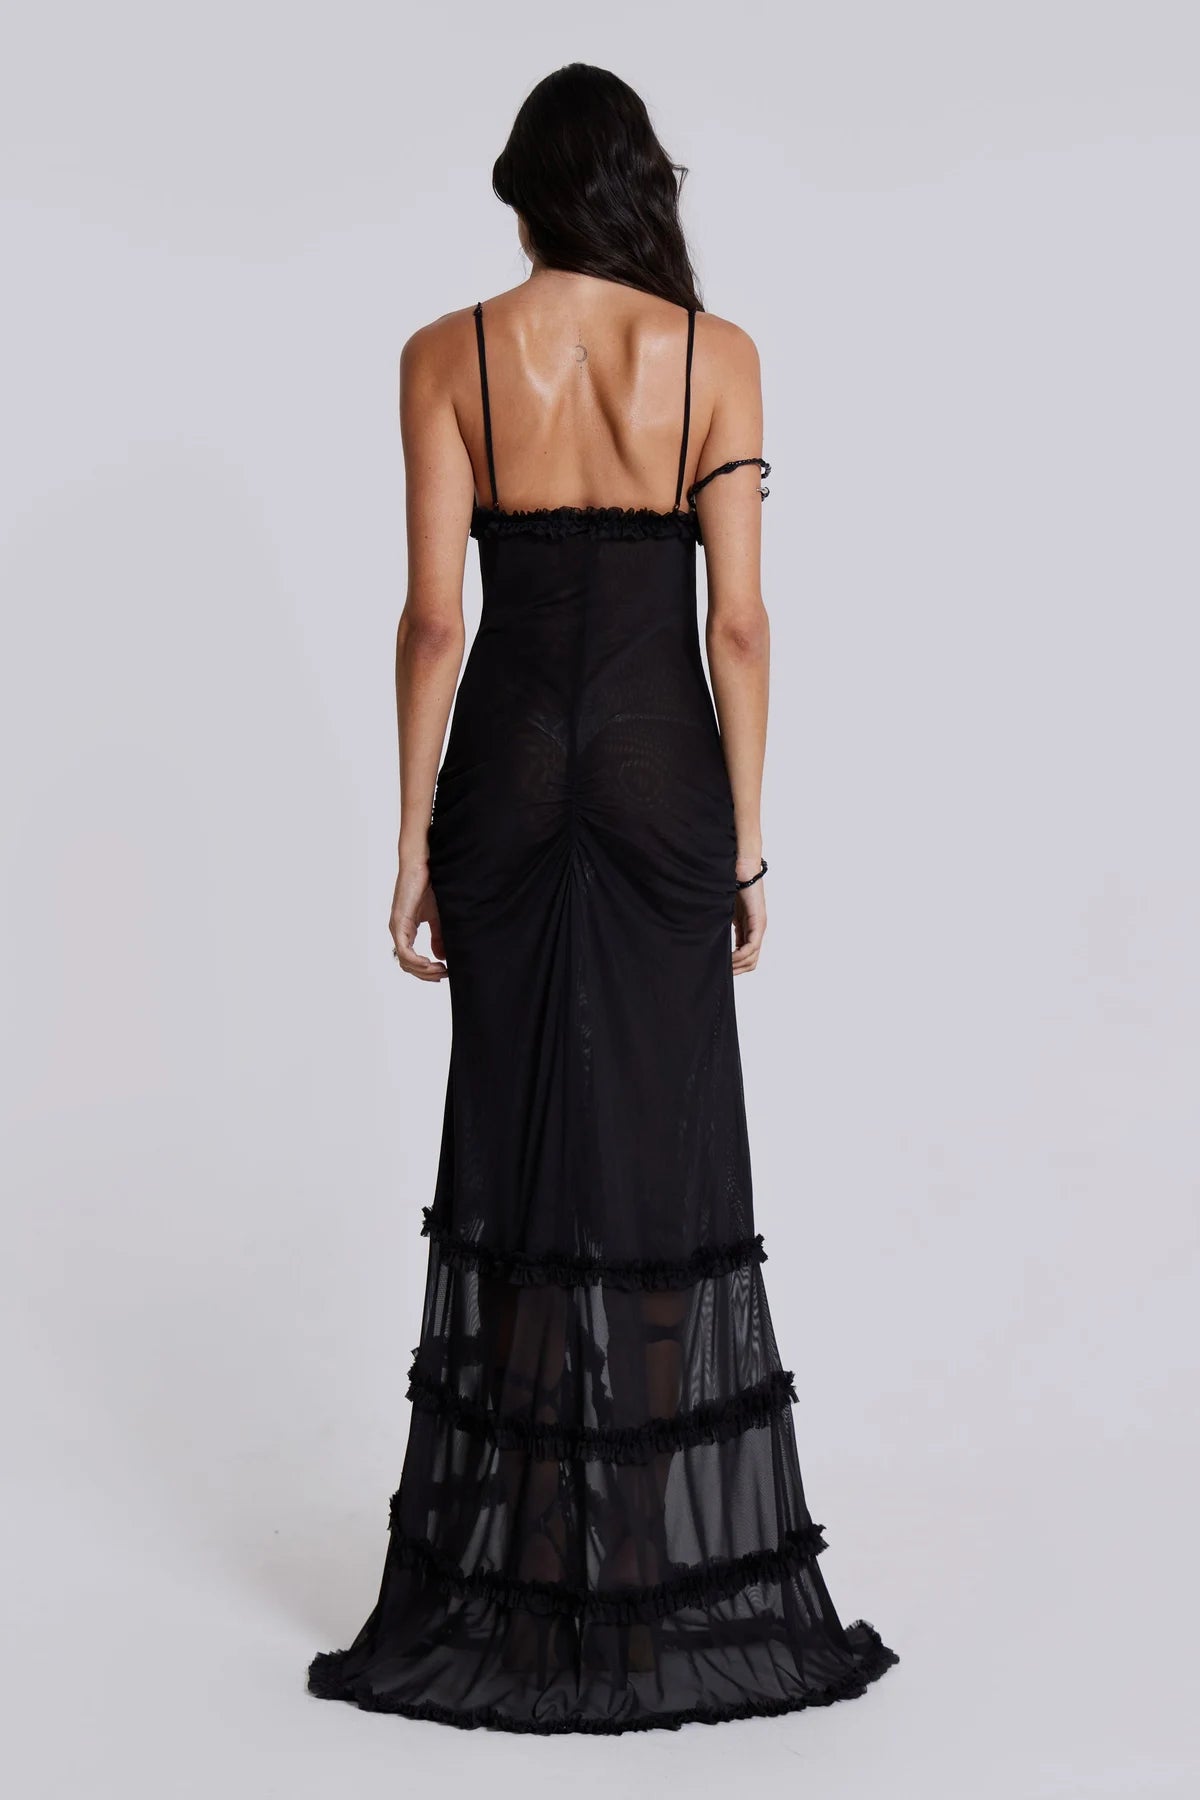 Jaded London - Fatale Maxi Dress in Midnight Black